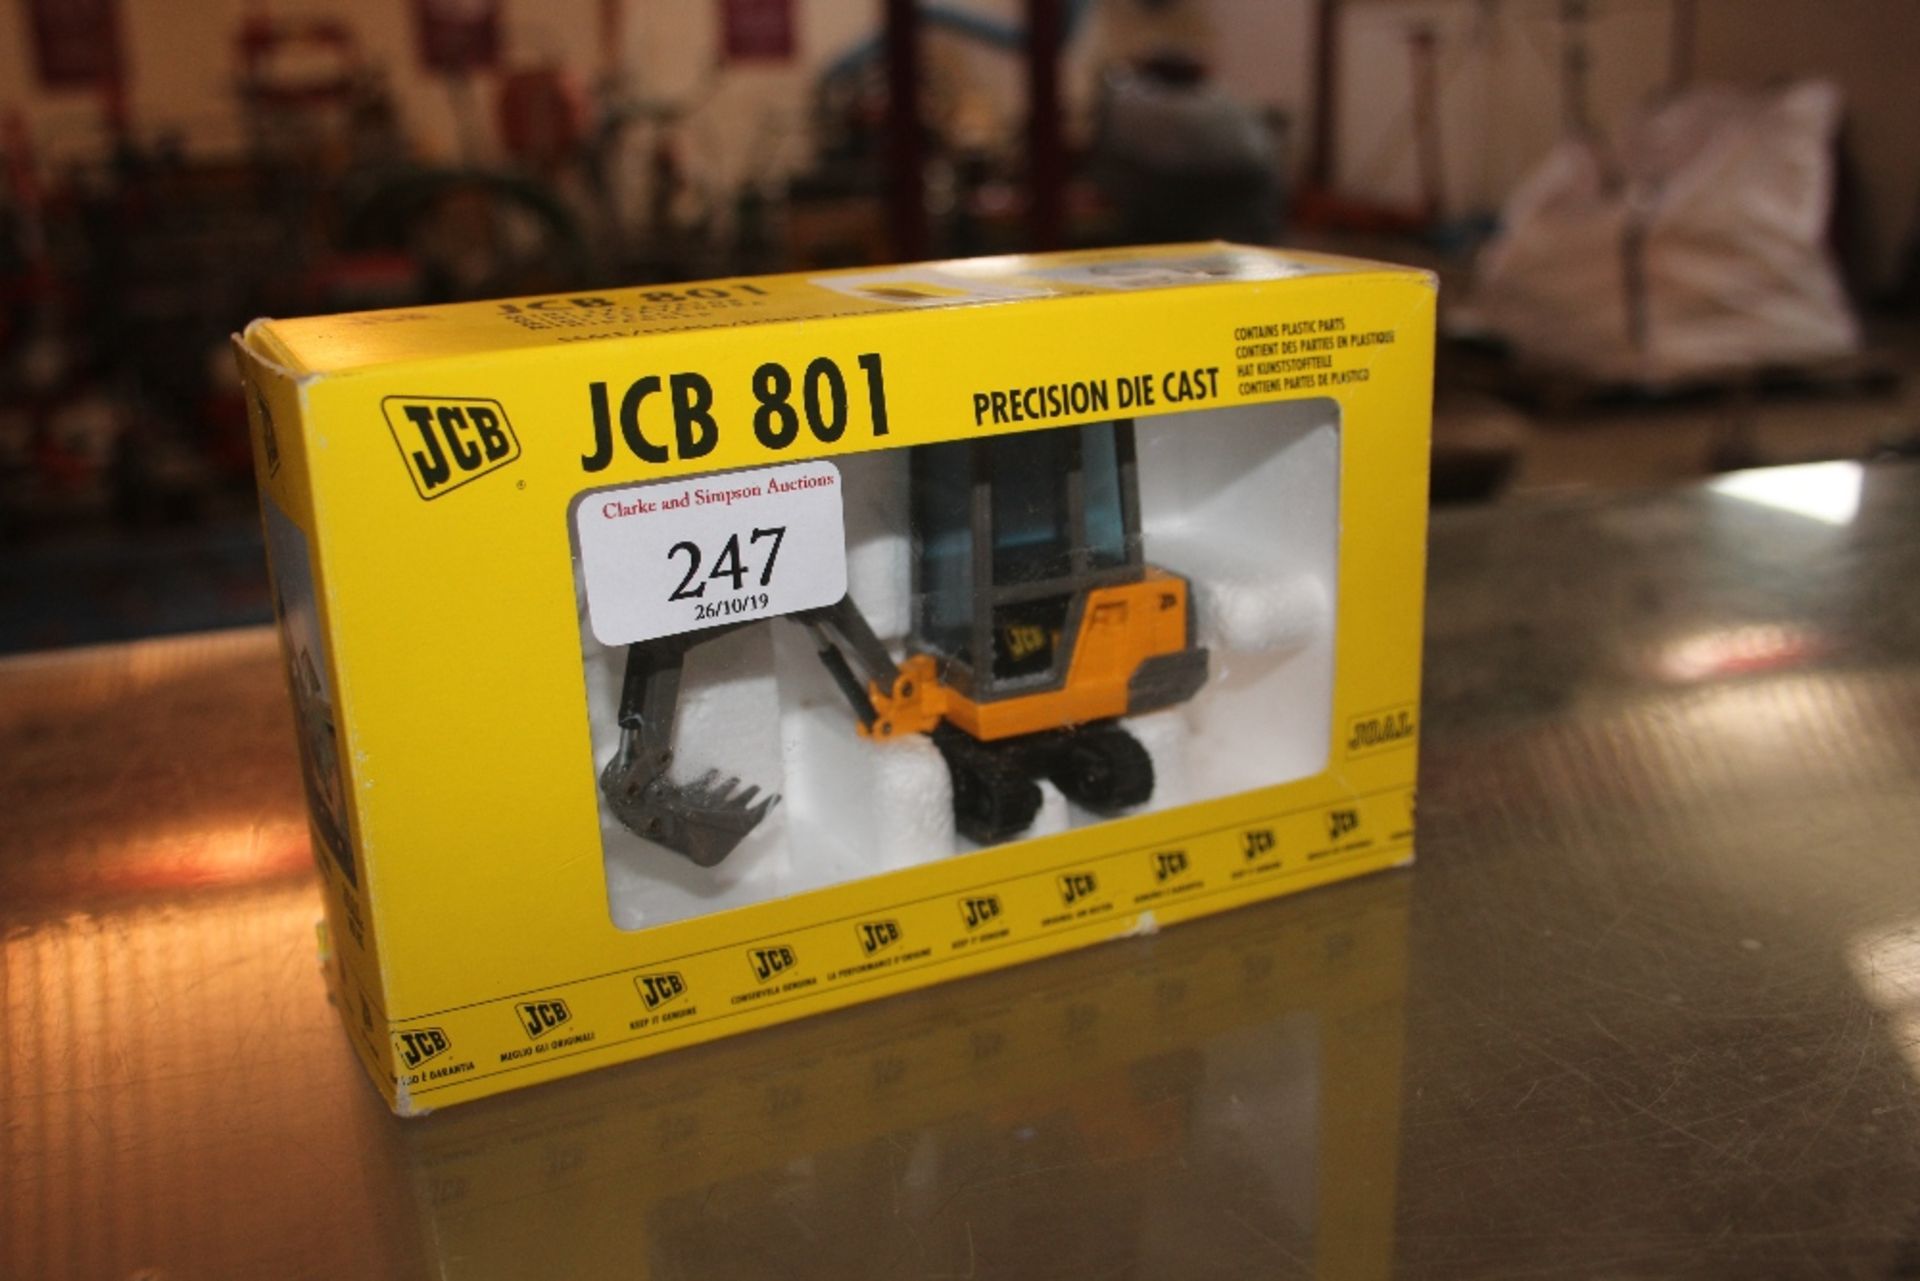 Joal JCB 801 1:35 model.